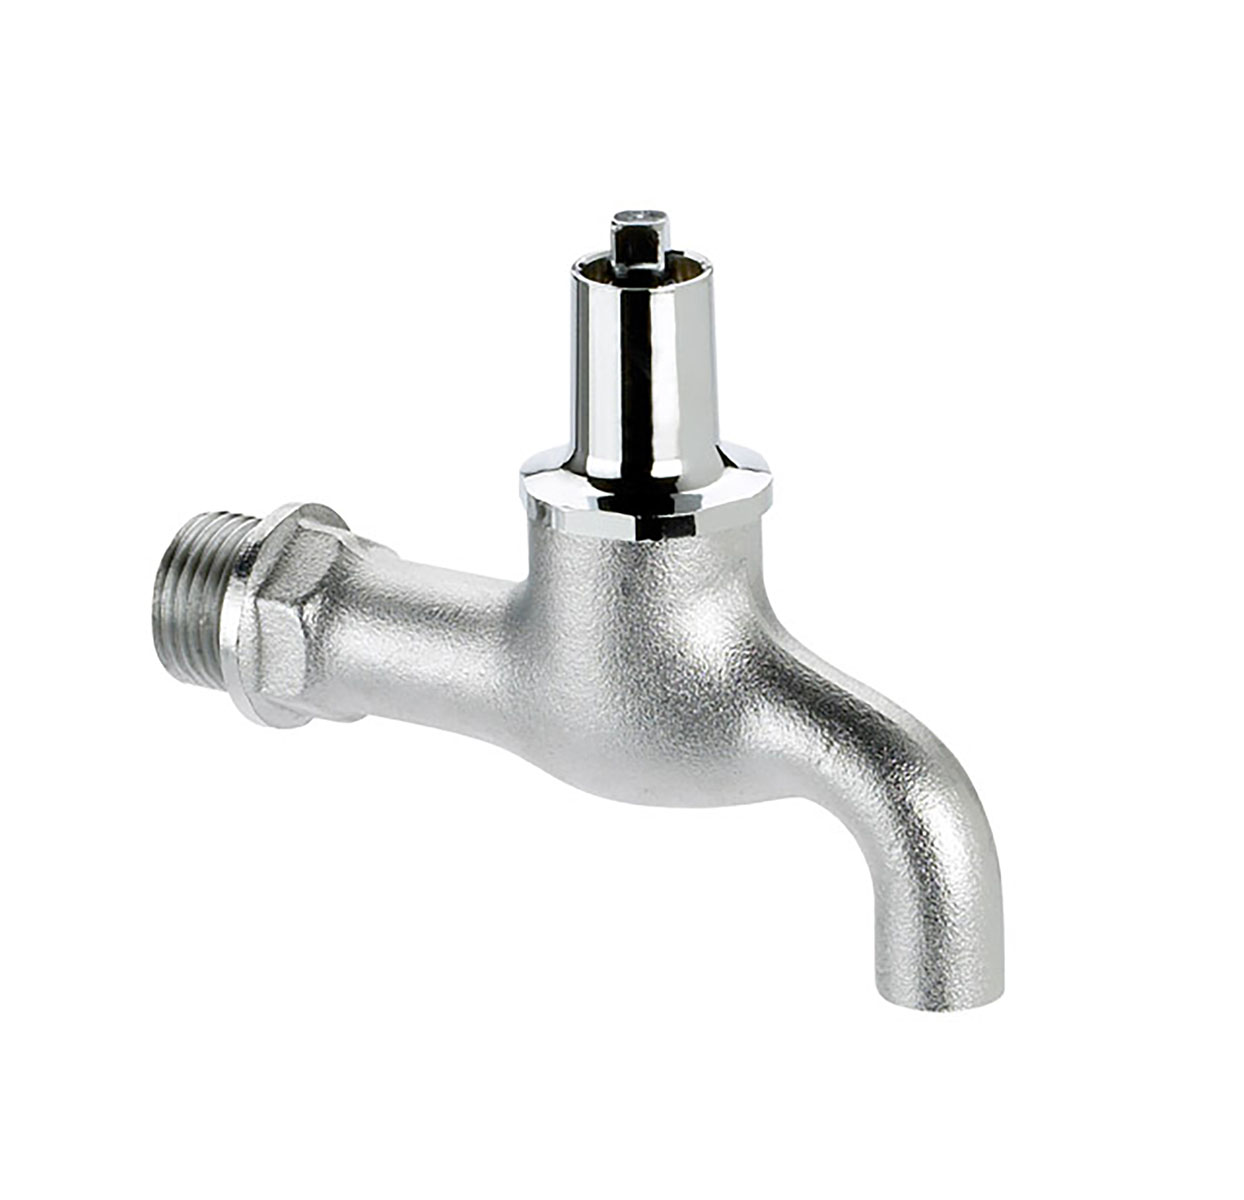 1005150 - CR-Brass draw-off tap - heavy variation socket key upper-part